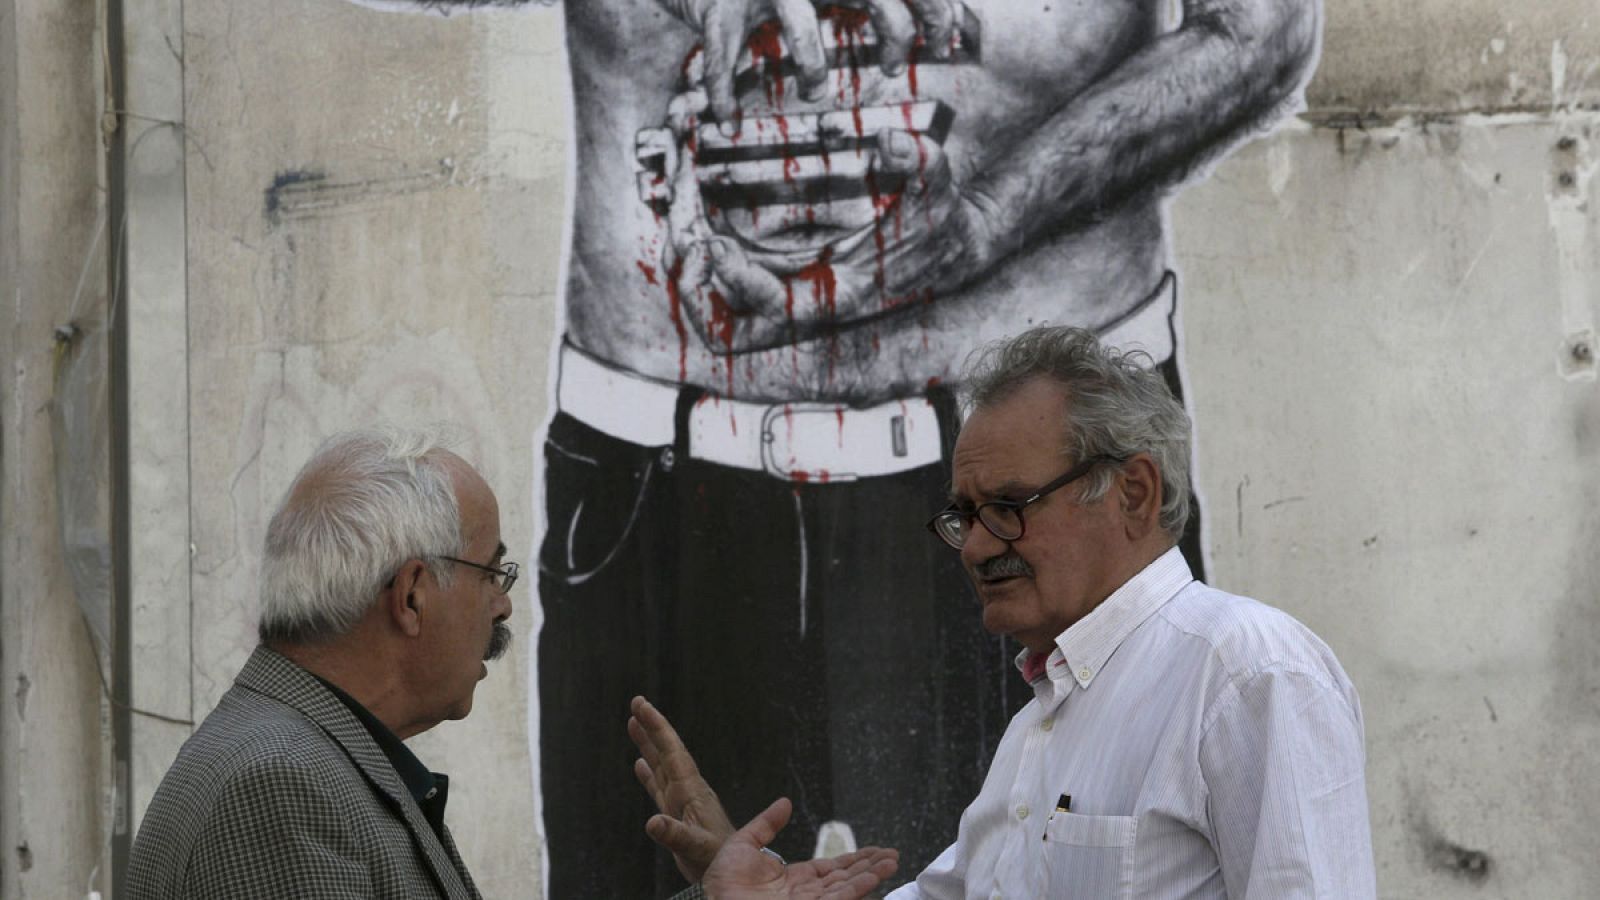 Dos hombres conversan en Atenas, delante de un graffiti que muestra un hombre que sujeta un símbolo del euro ensangrentado